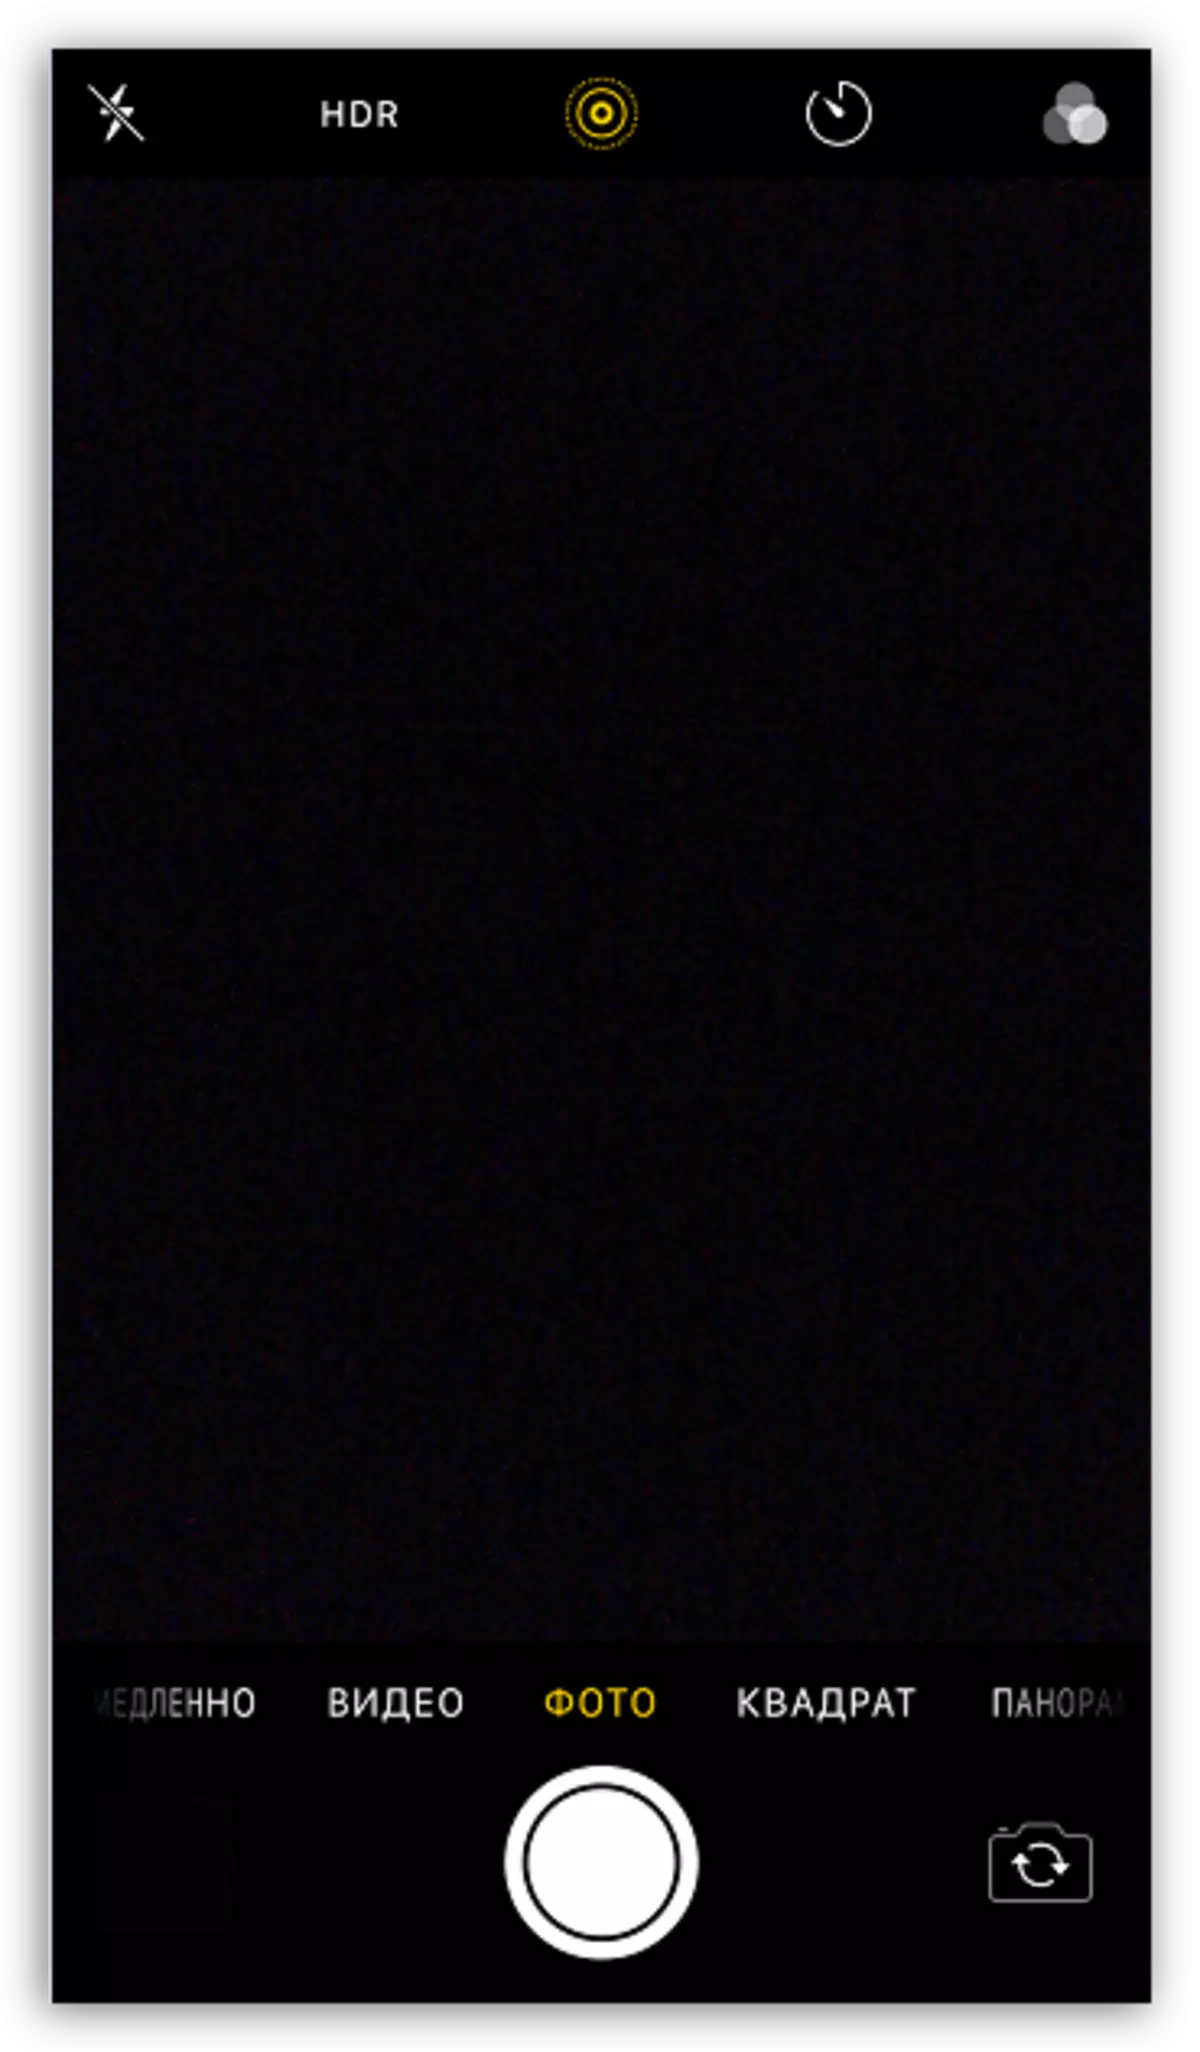 شاشة سوداء في تطبيق الكاميرا على اي فون